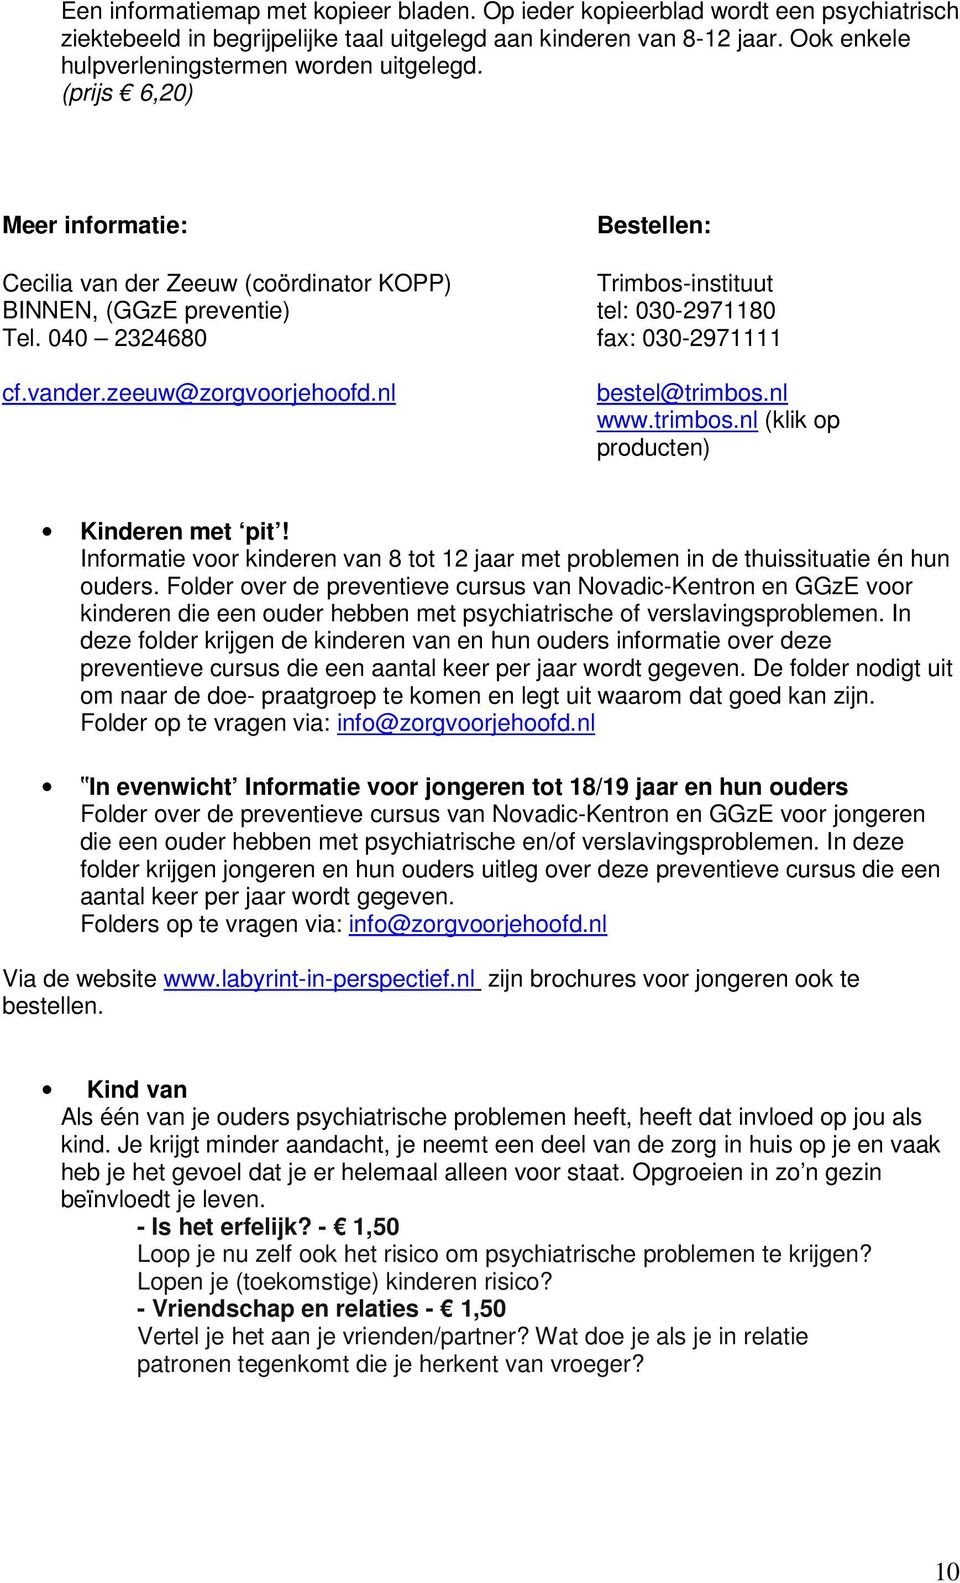 040 2324680 fax: 030-2971111 cf.vander.zeeuw@zorgvoorjehoofd.nl bestel@trimbos.nl www.trimbos.nl (klik op producten) Kinderen met pit!